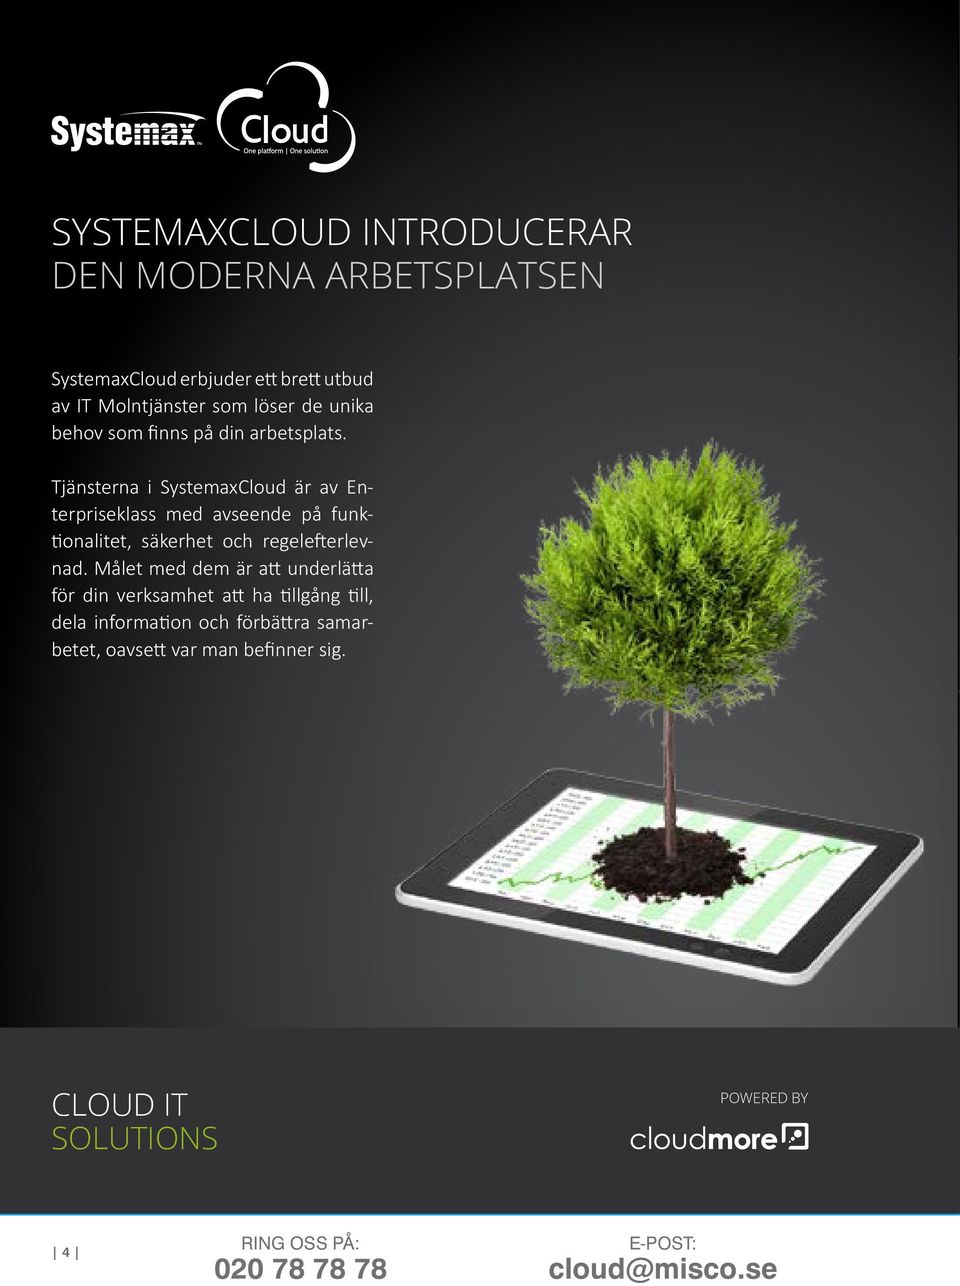 Tjänsterna i SystemaxCloud är av Enterpriseklass med avseende på funktionalitet, säkerhet och regelefterlevnad.